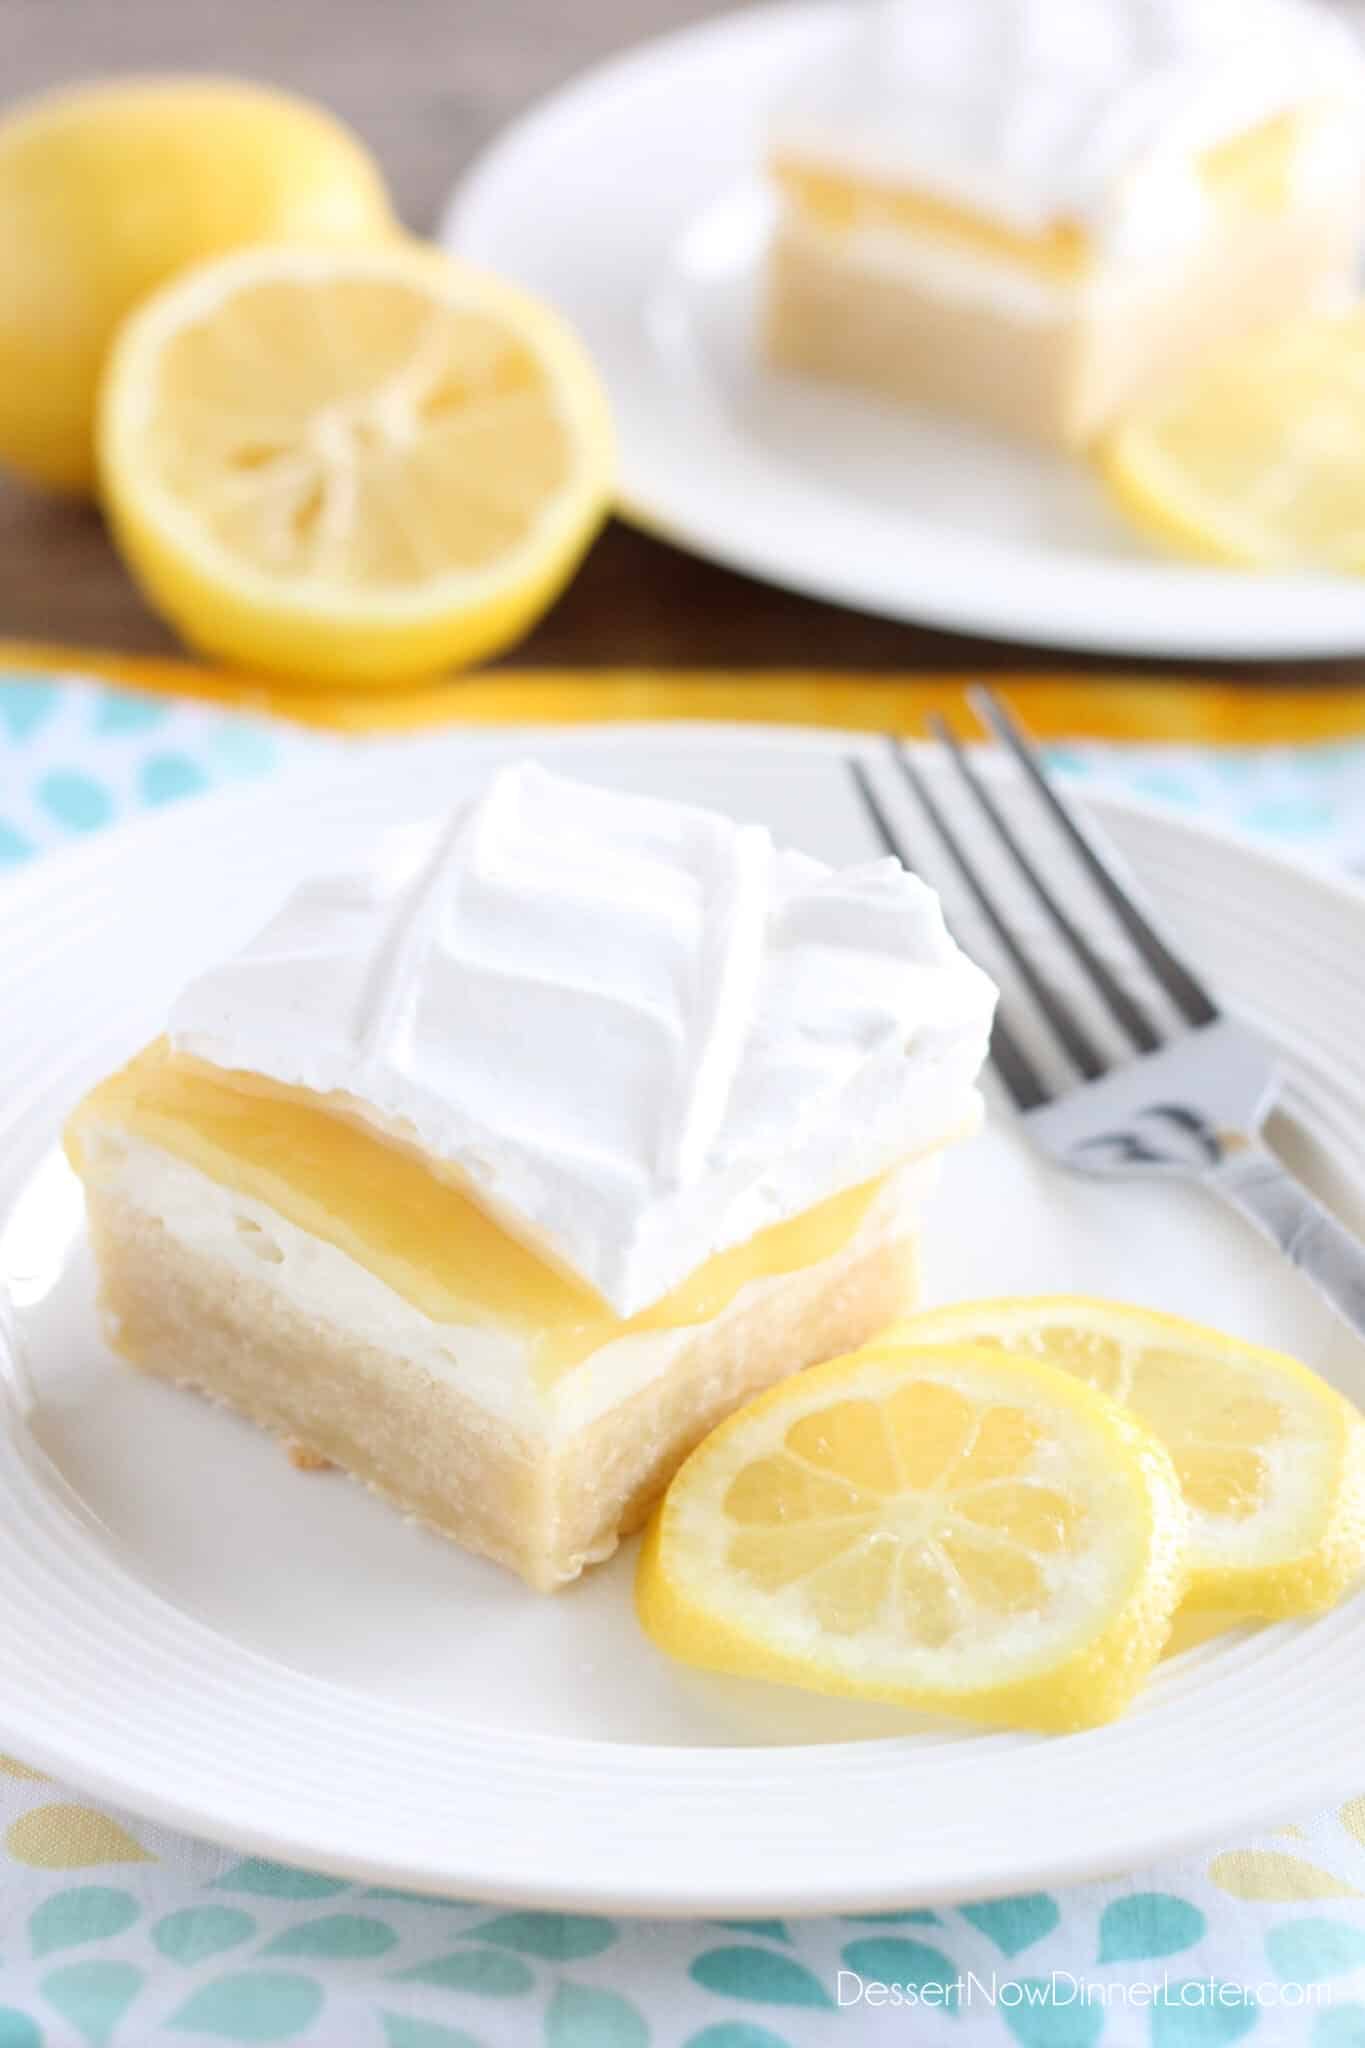 Lemon Curd Dessert | Dessert Now Dinner Later